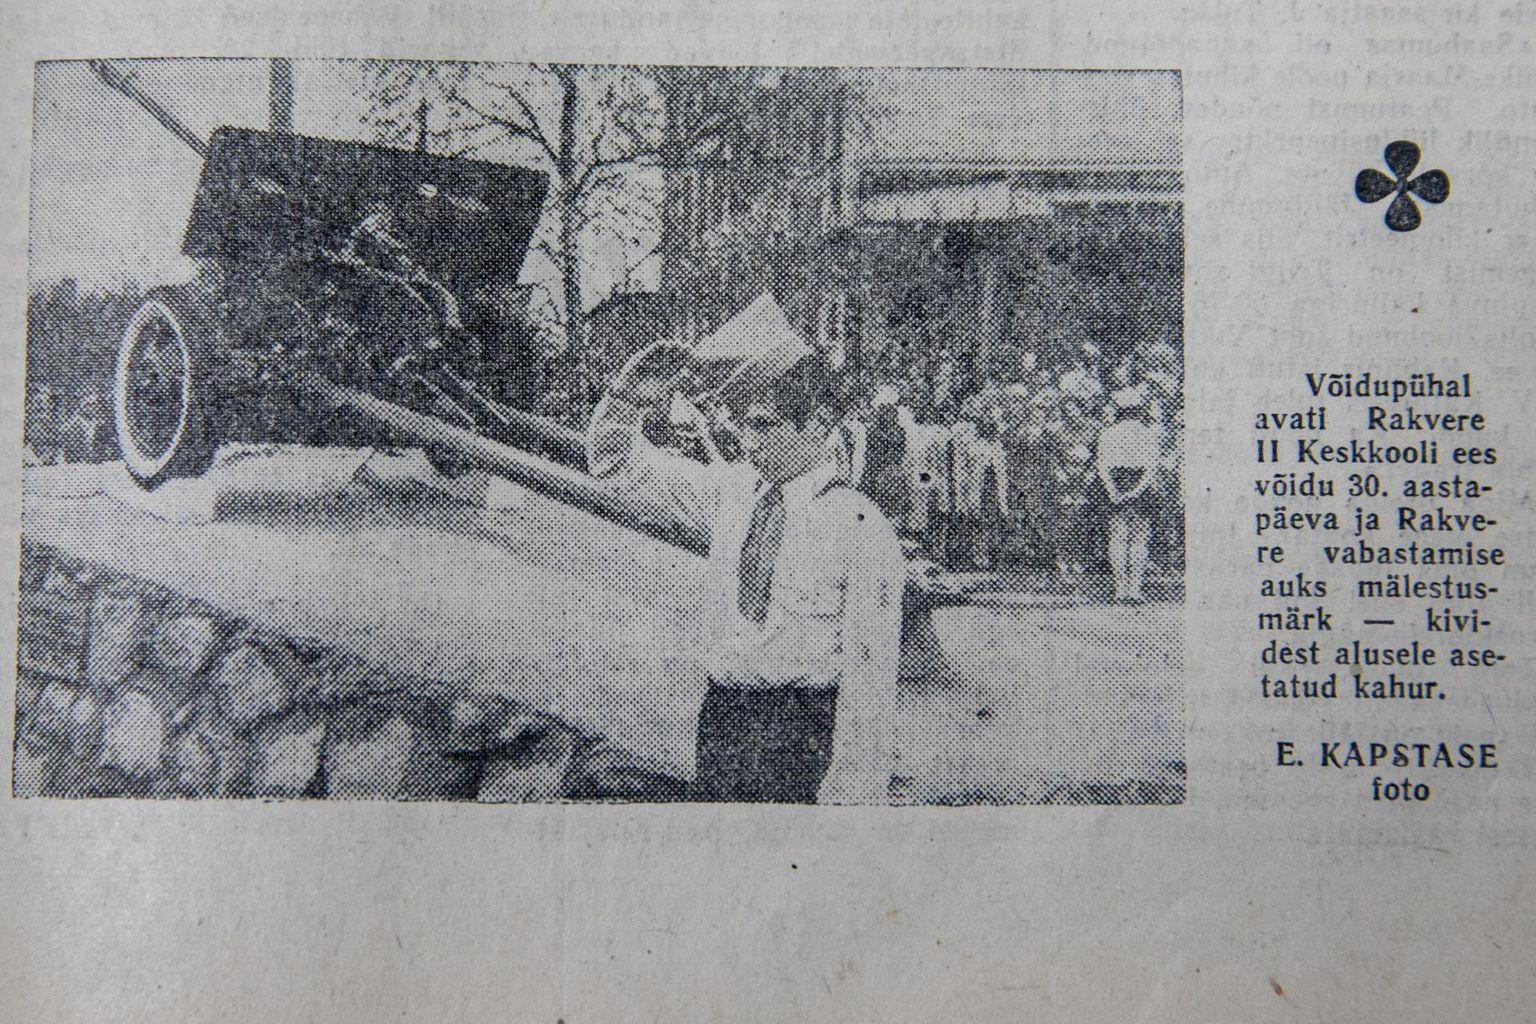 Rakvere 2. keskkooli ees avati mälestusmärk-kahur 9. mail 1975. Toonasel rajoonilehel Punane Täht oli vaatamata ideoloogilisele tähtsusele sündmuse kajastamisega aega küll ja küll: vastav artikkel ilmus 13. mail, foto aga veel kaks päeva hiljem, 15. mail.